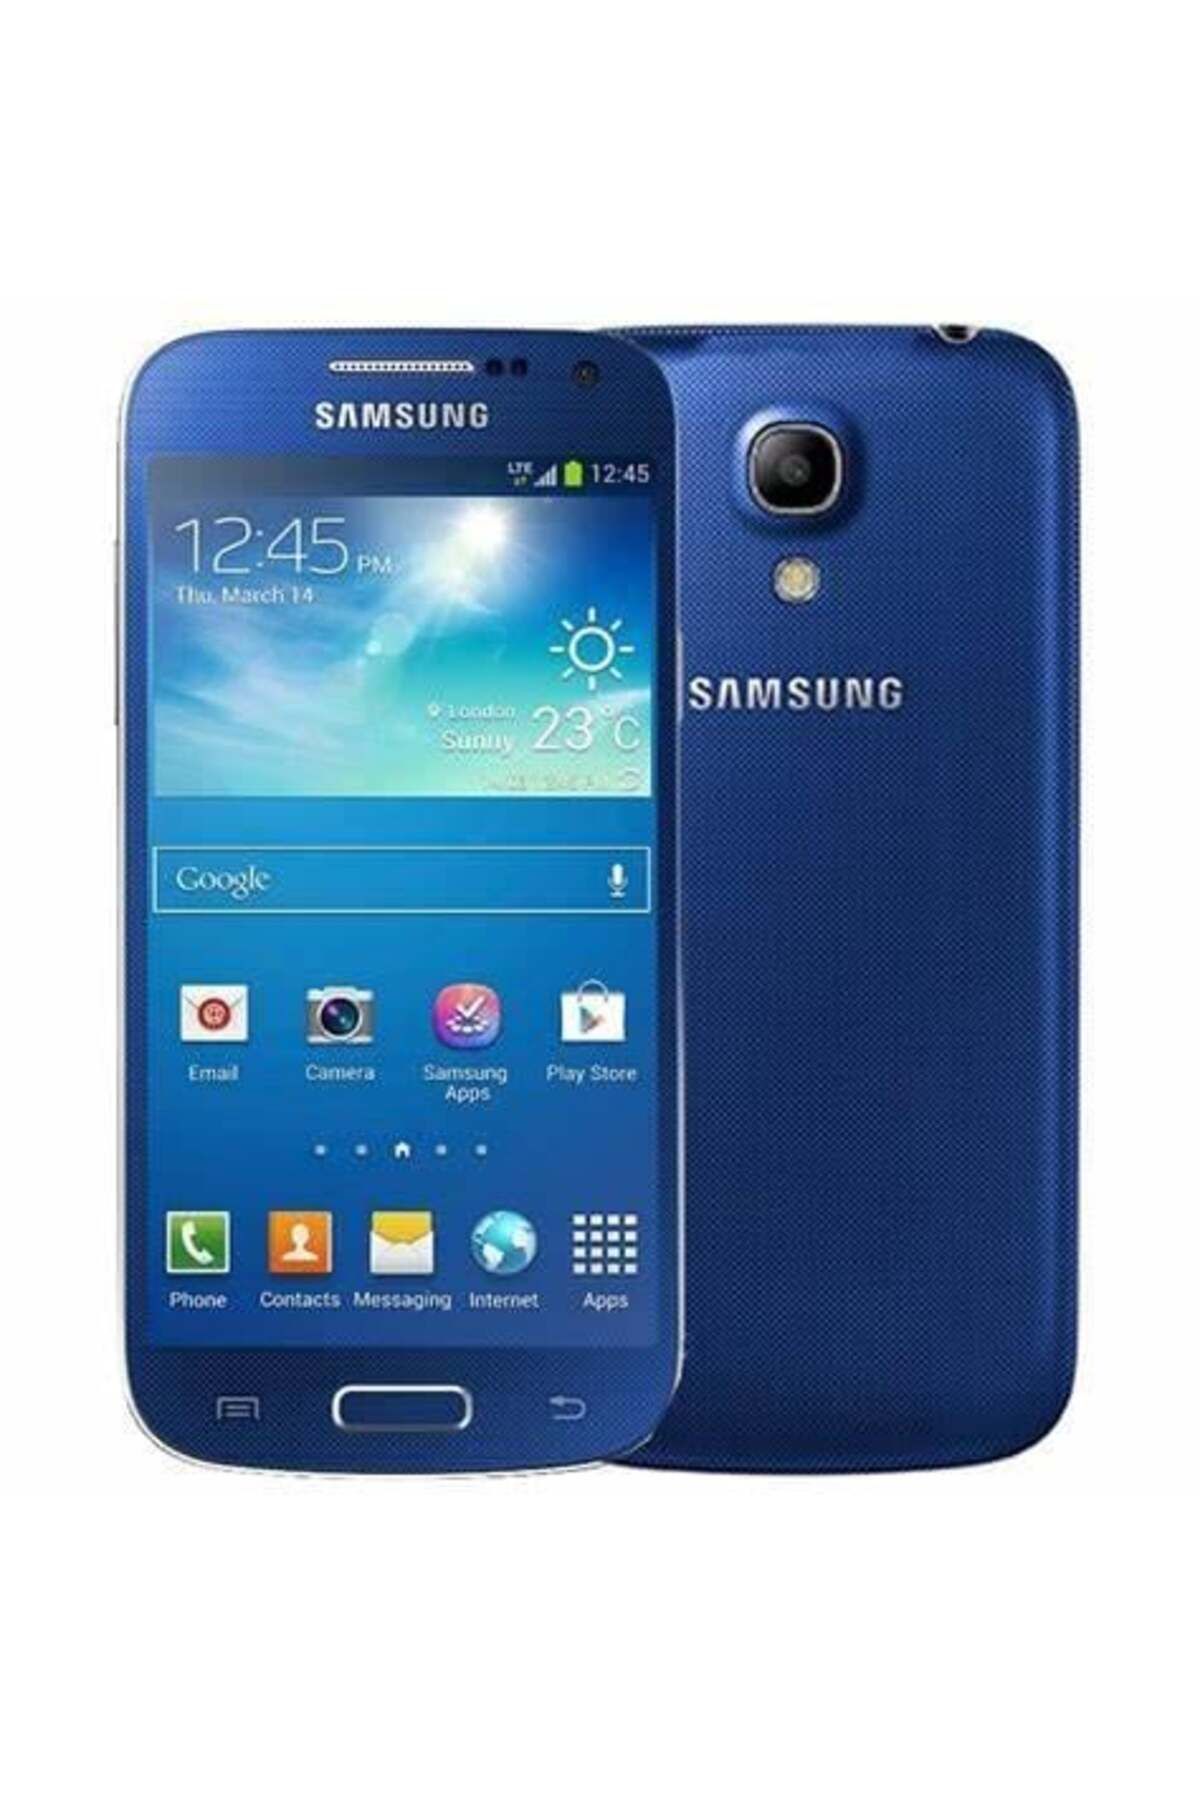 Samsung Yenilenmiş Galaxy S4 Mini 8GB Mavi Cep Telefonu (12 Ay Osm Bilişim Garantili)